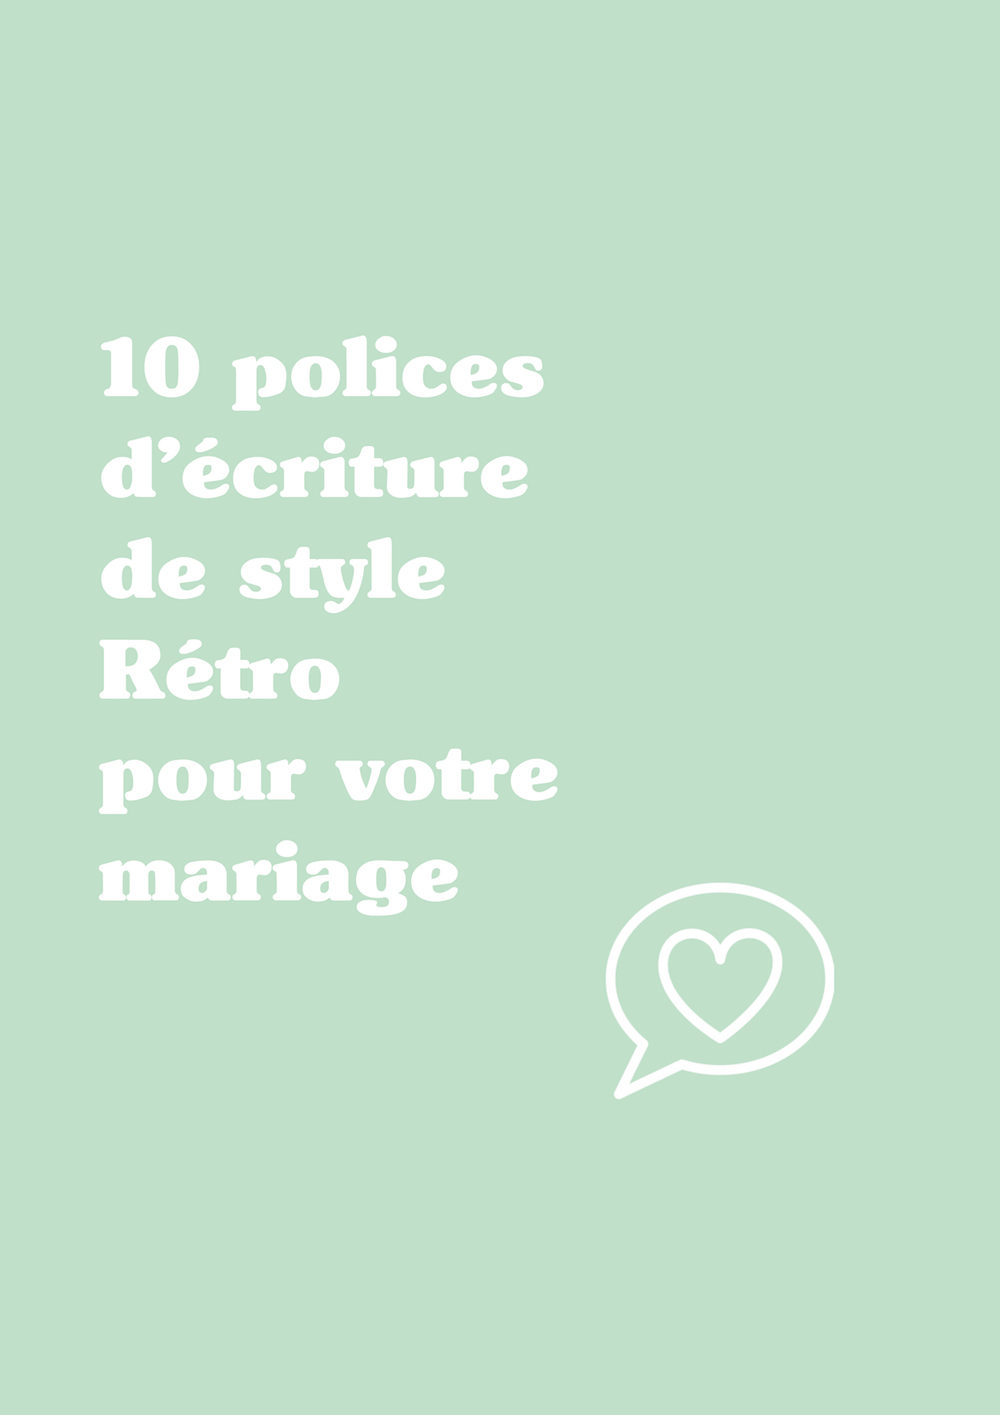 10 polices d'écriture de style Rétro pour votre mariage - Blog Mariage Madame C